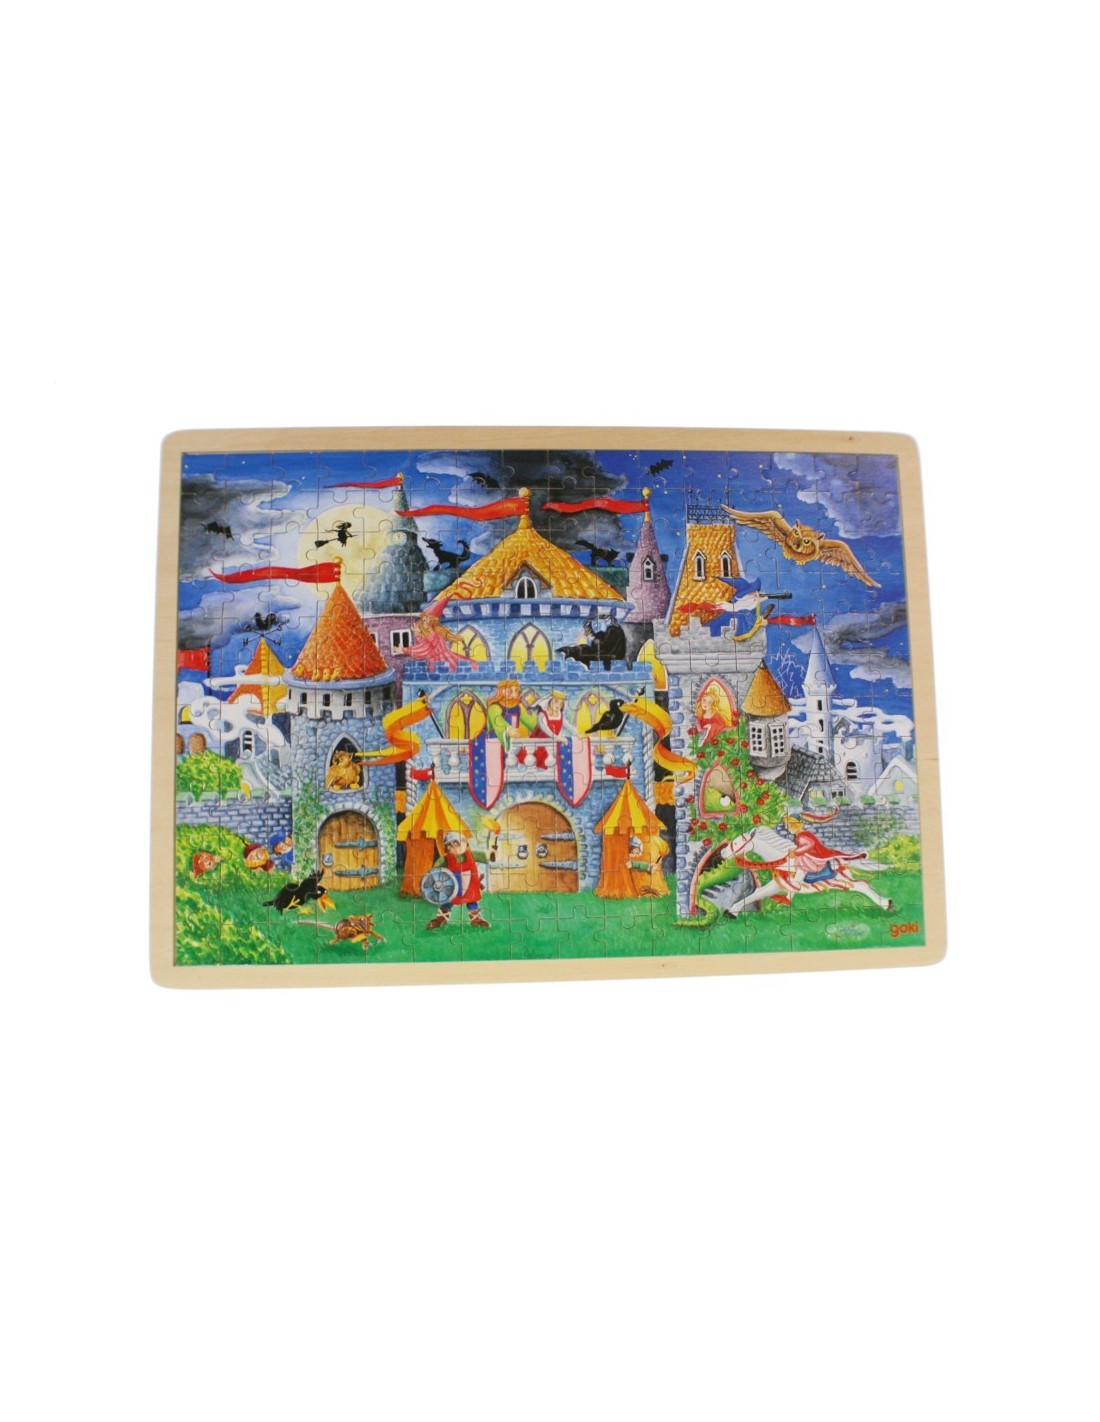 Puzle de 192 peces de fusta amb dibuix castell encantat, trencaclosques per a nens.